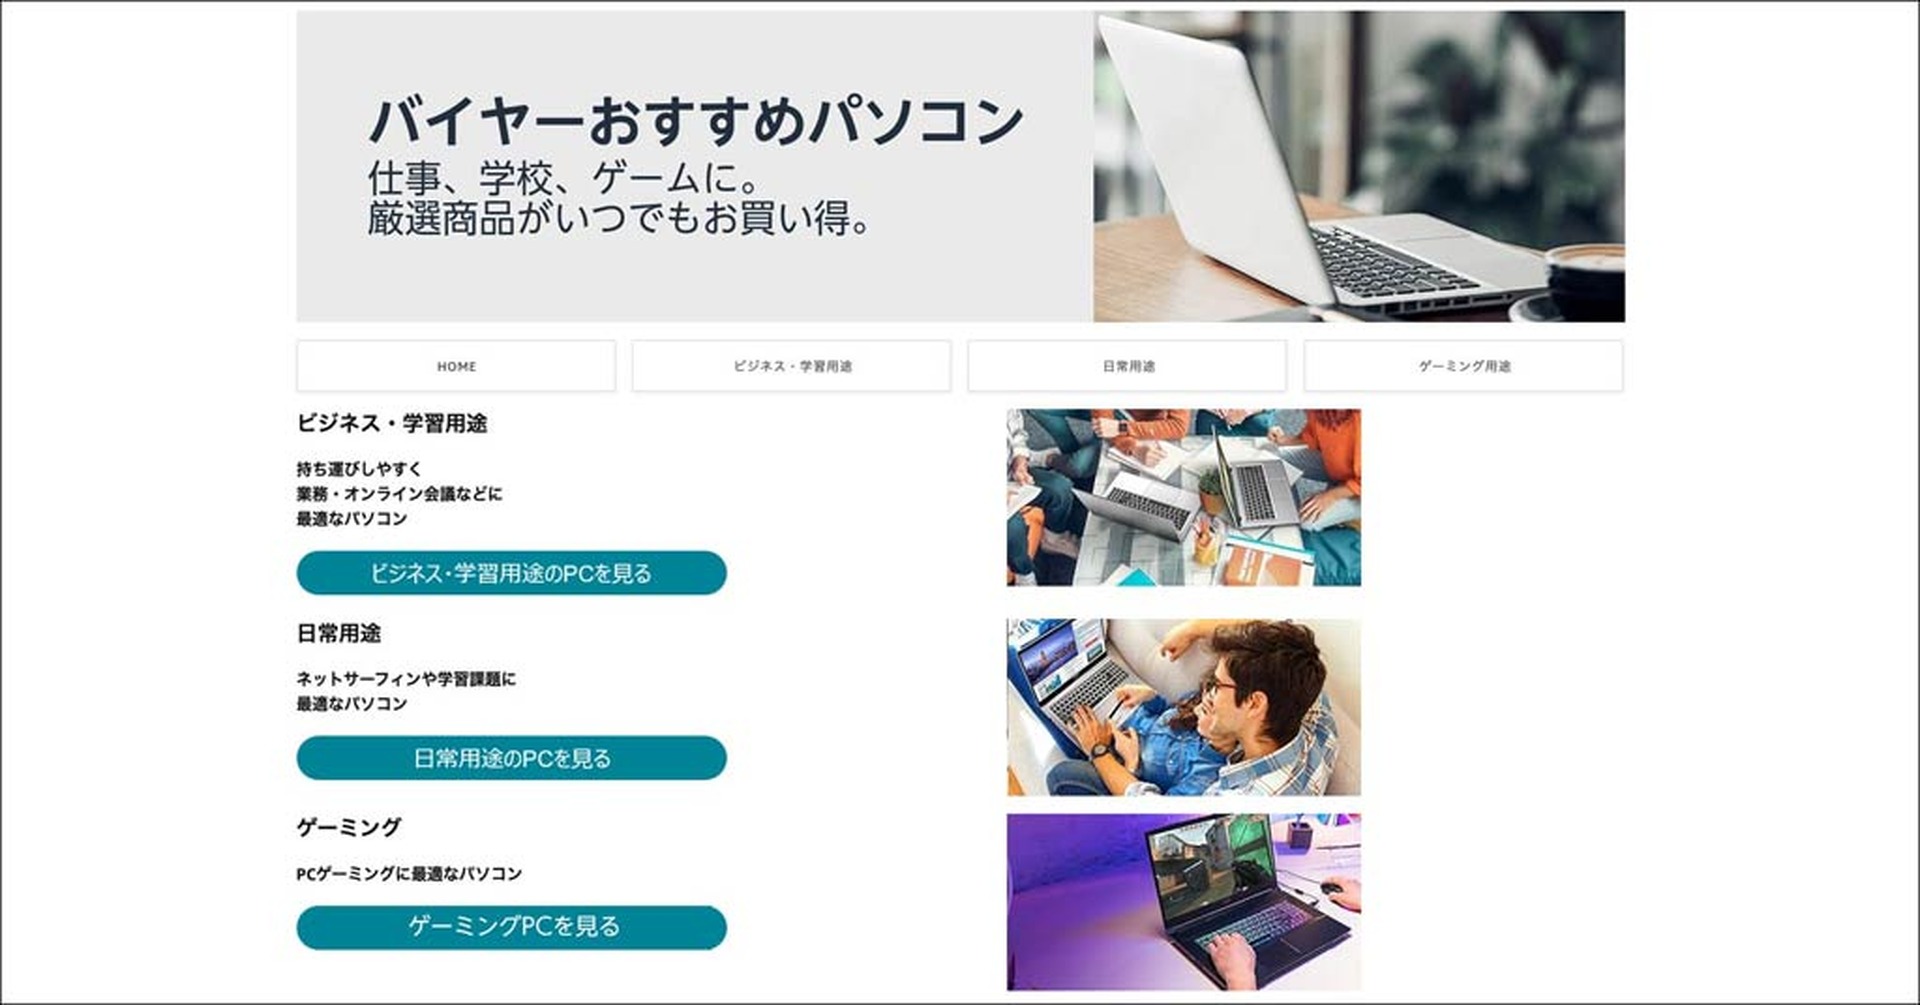 Amazon.co.jpに「バイヤーおすすめパソコン」ストア開設。ゲーミングや 